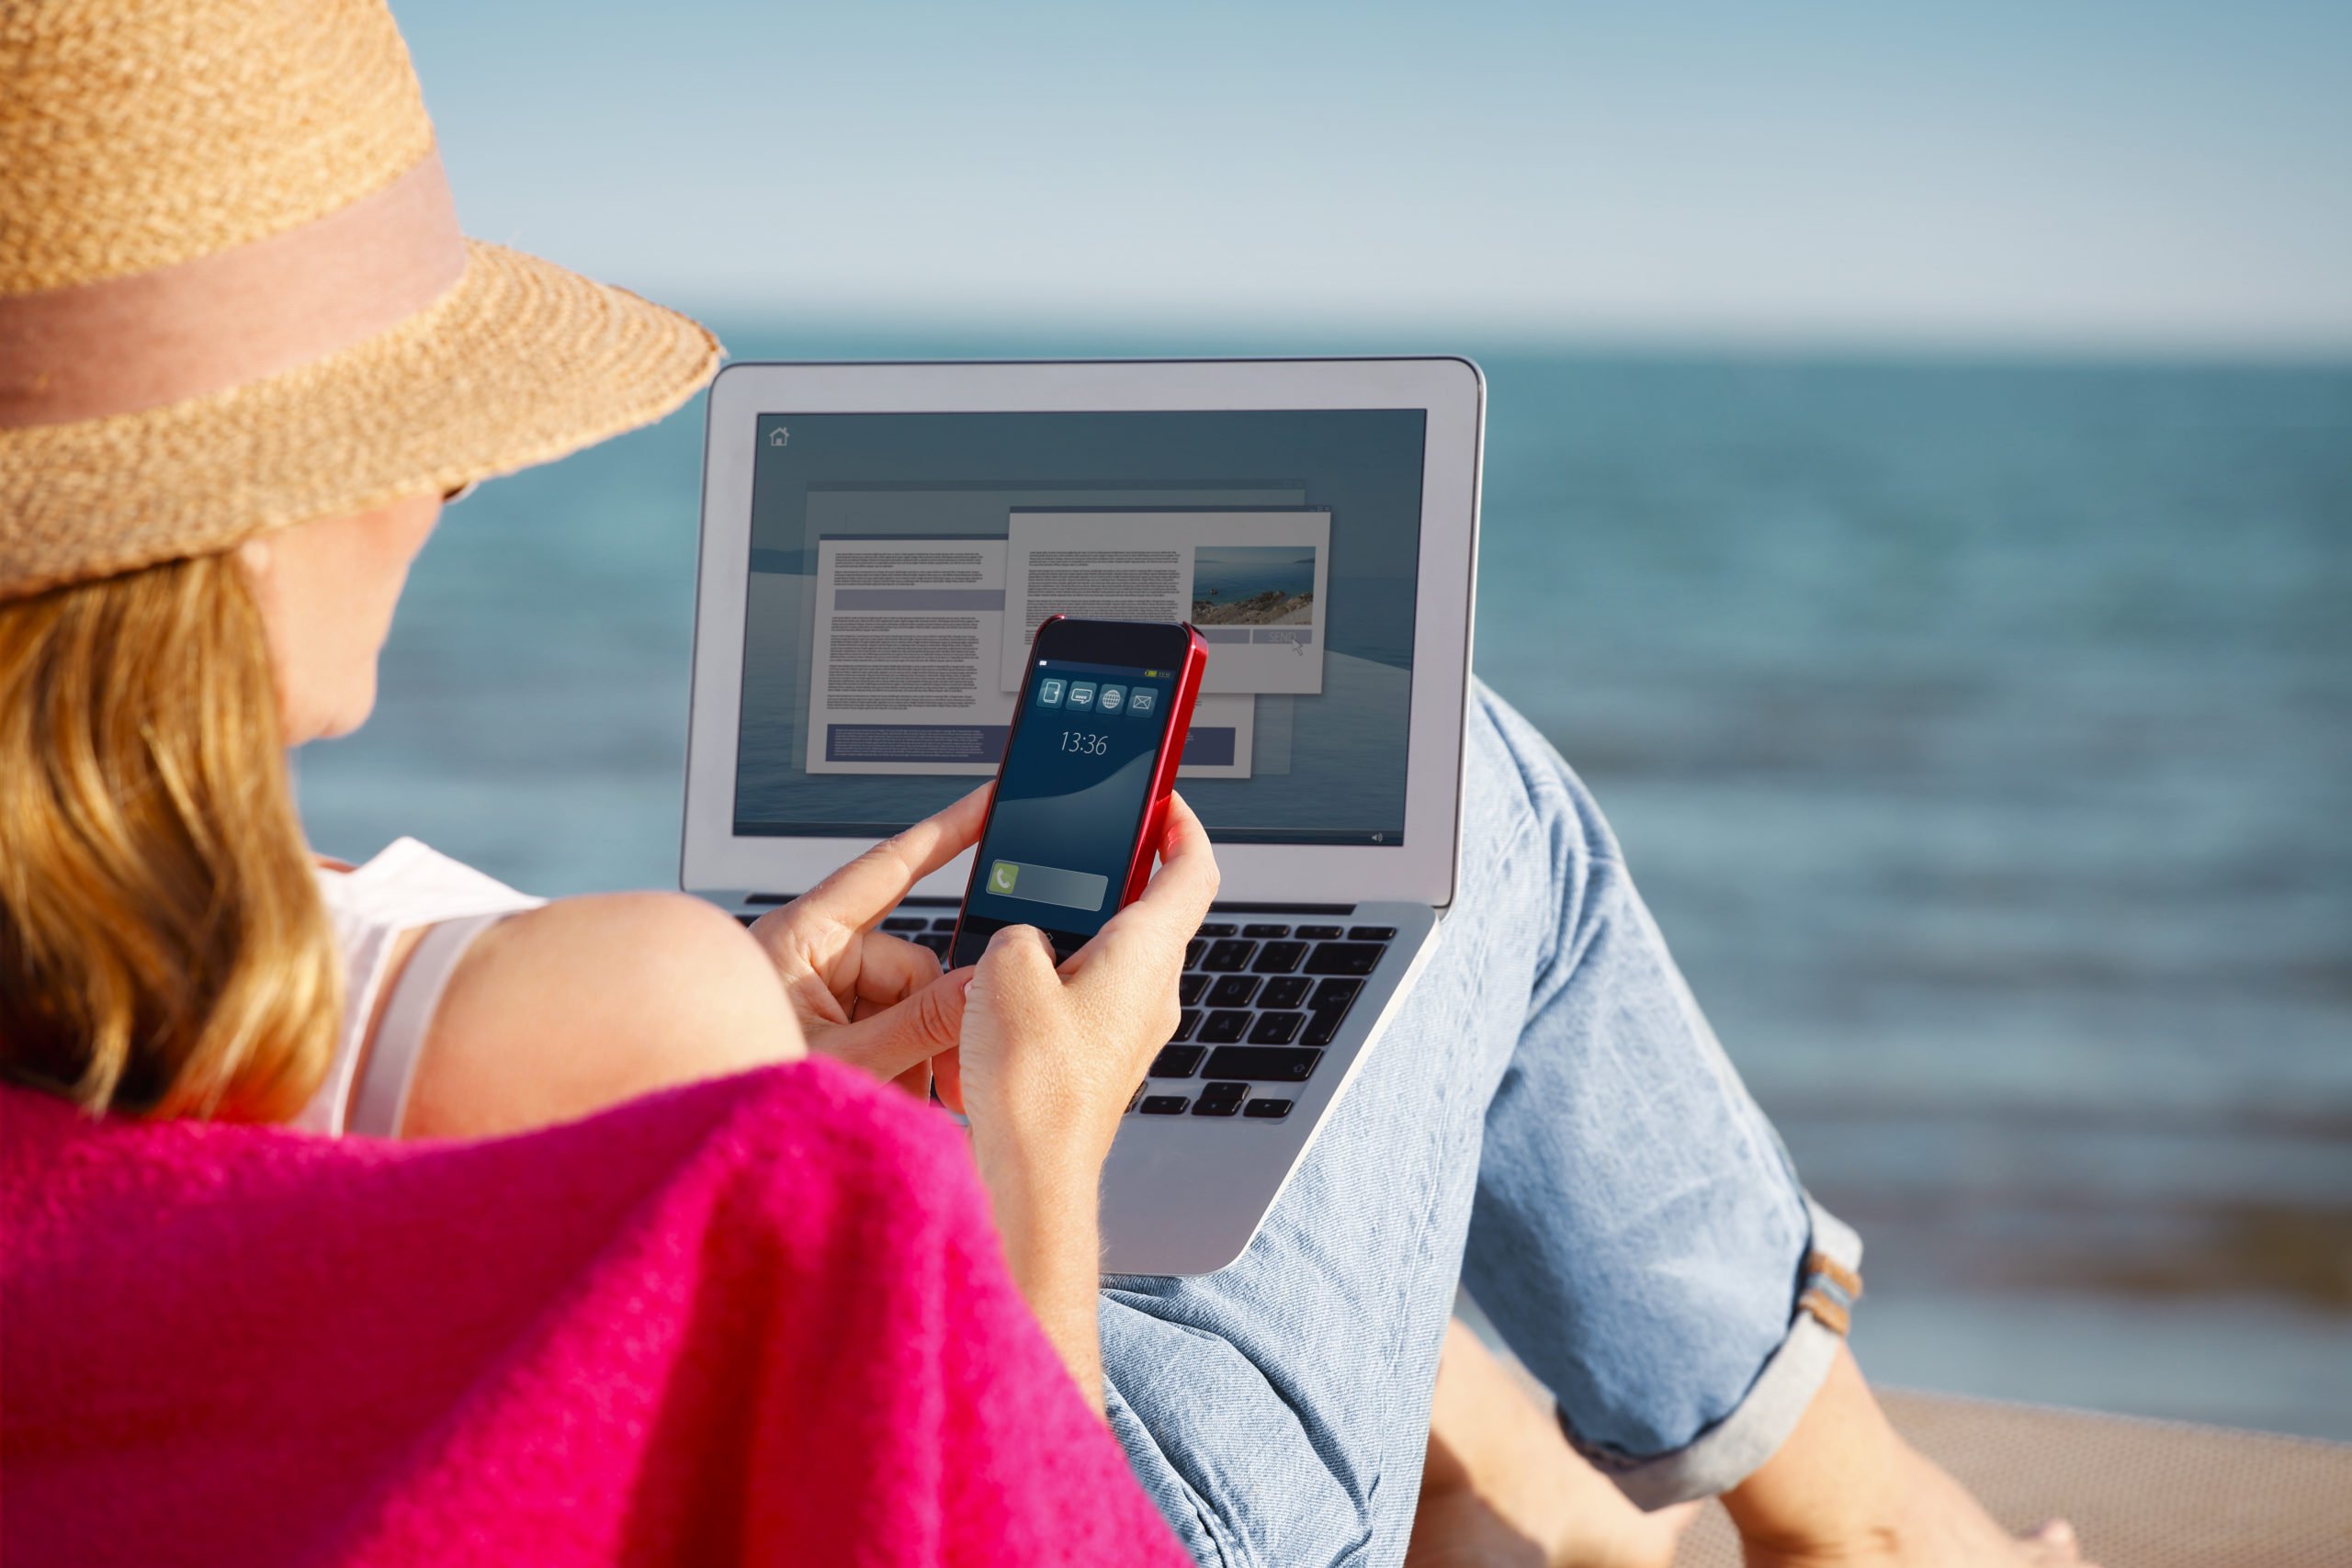 Телефон на пляже. С ноутбуком на пляже. Женщина на пляже с телефоном. Работа на пляже с телефоном. Travel related